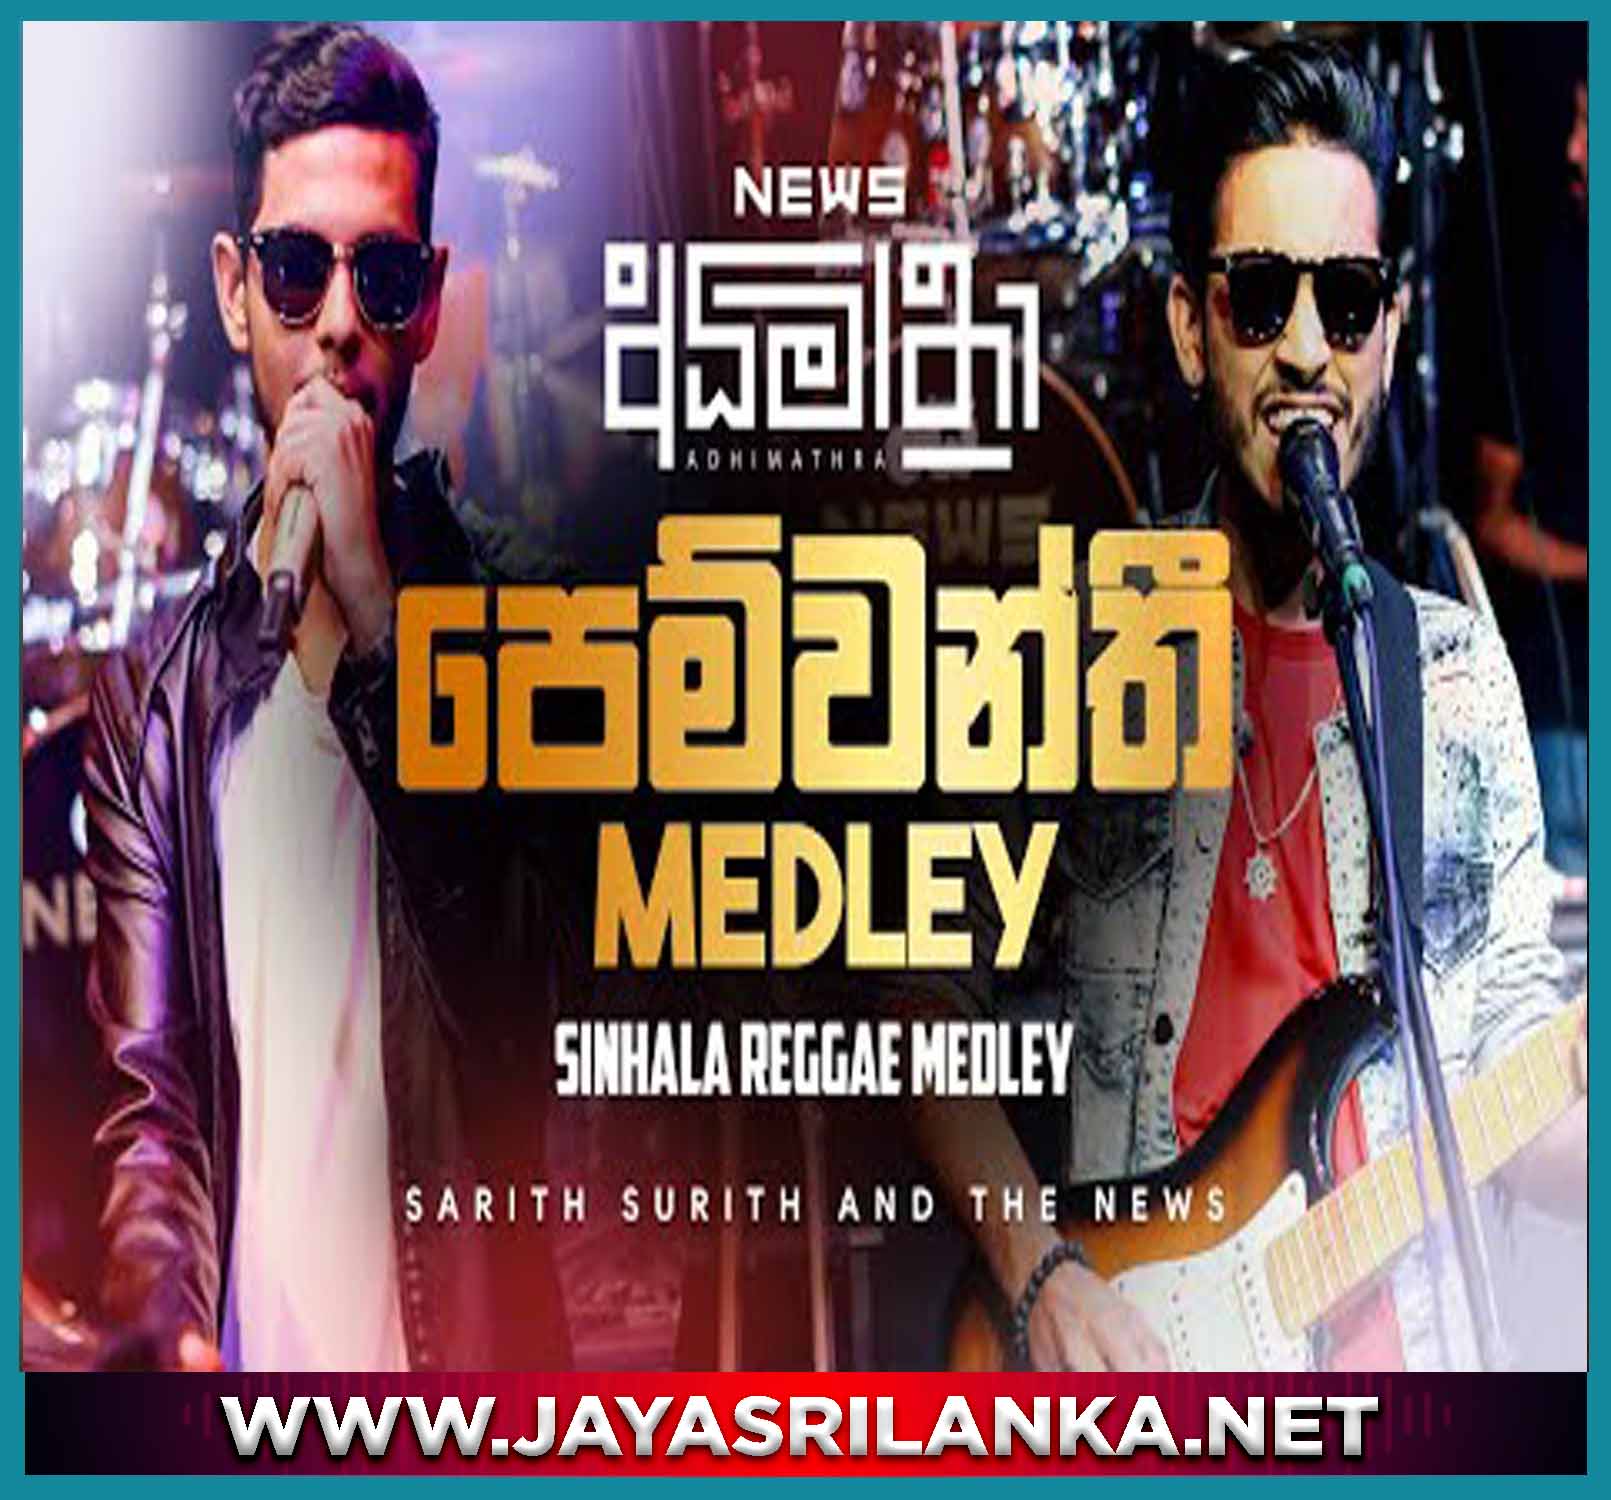 Pemwanthi News Sinhala Reggae Medley